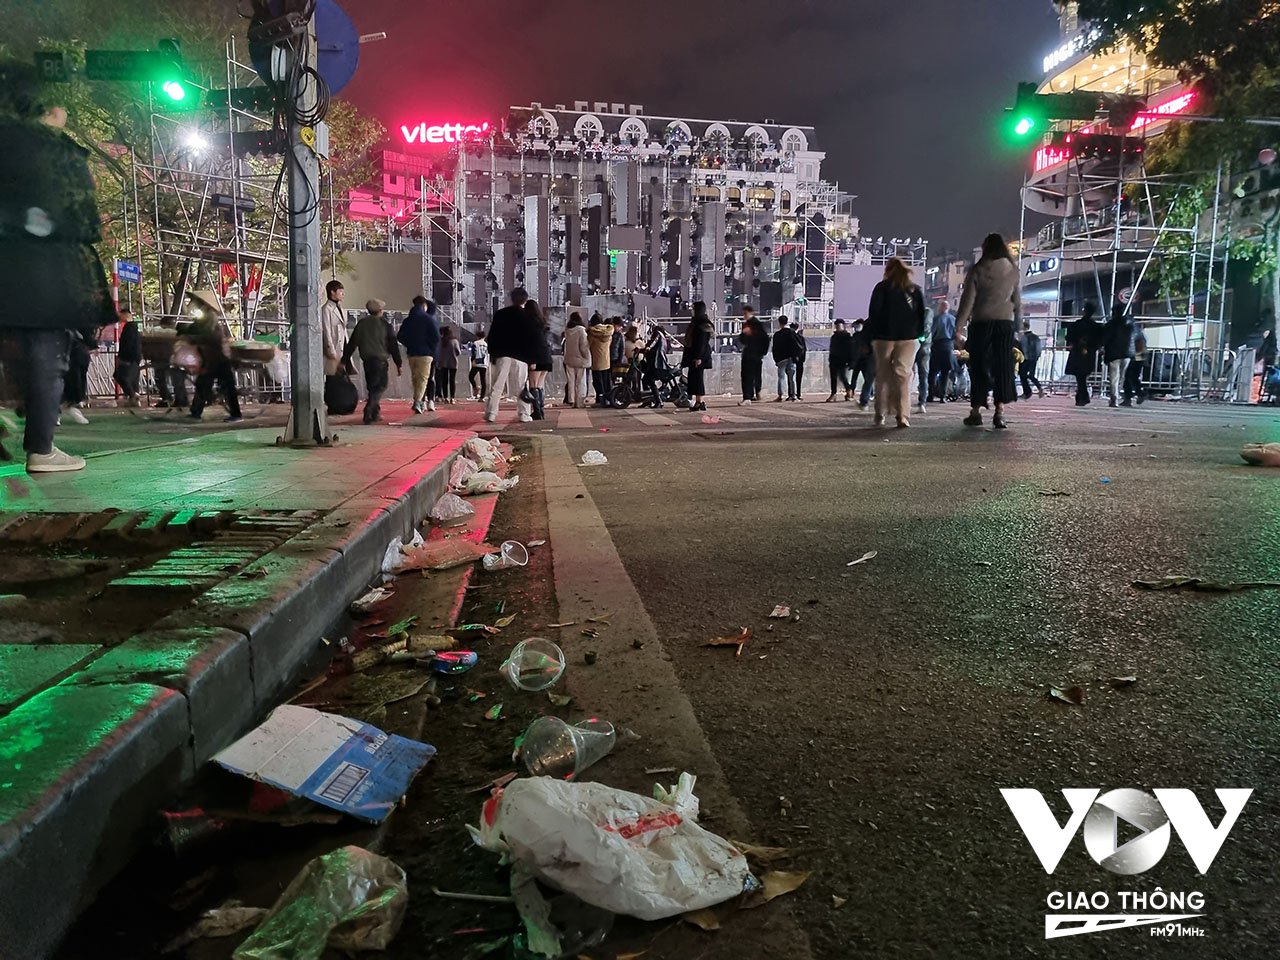 Dưới những bước chân đêm Countdown, hay những lễ hội tập trung đông người, là lượng lớn rác thải